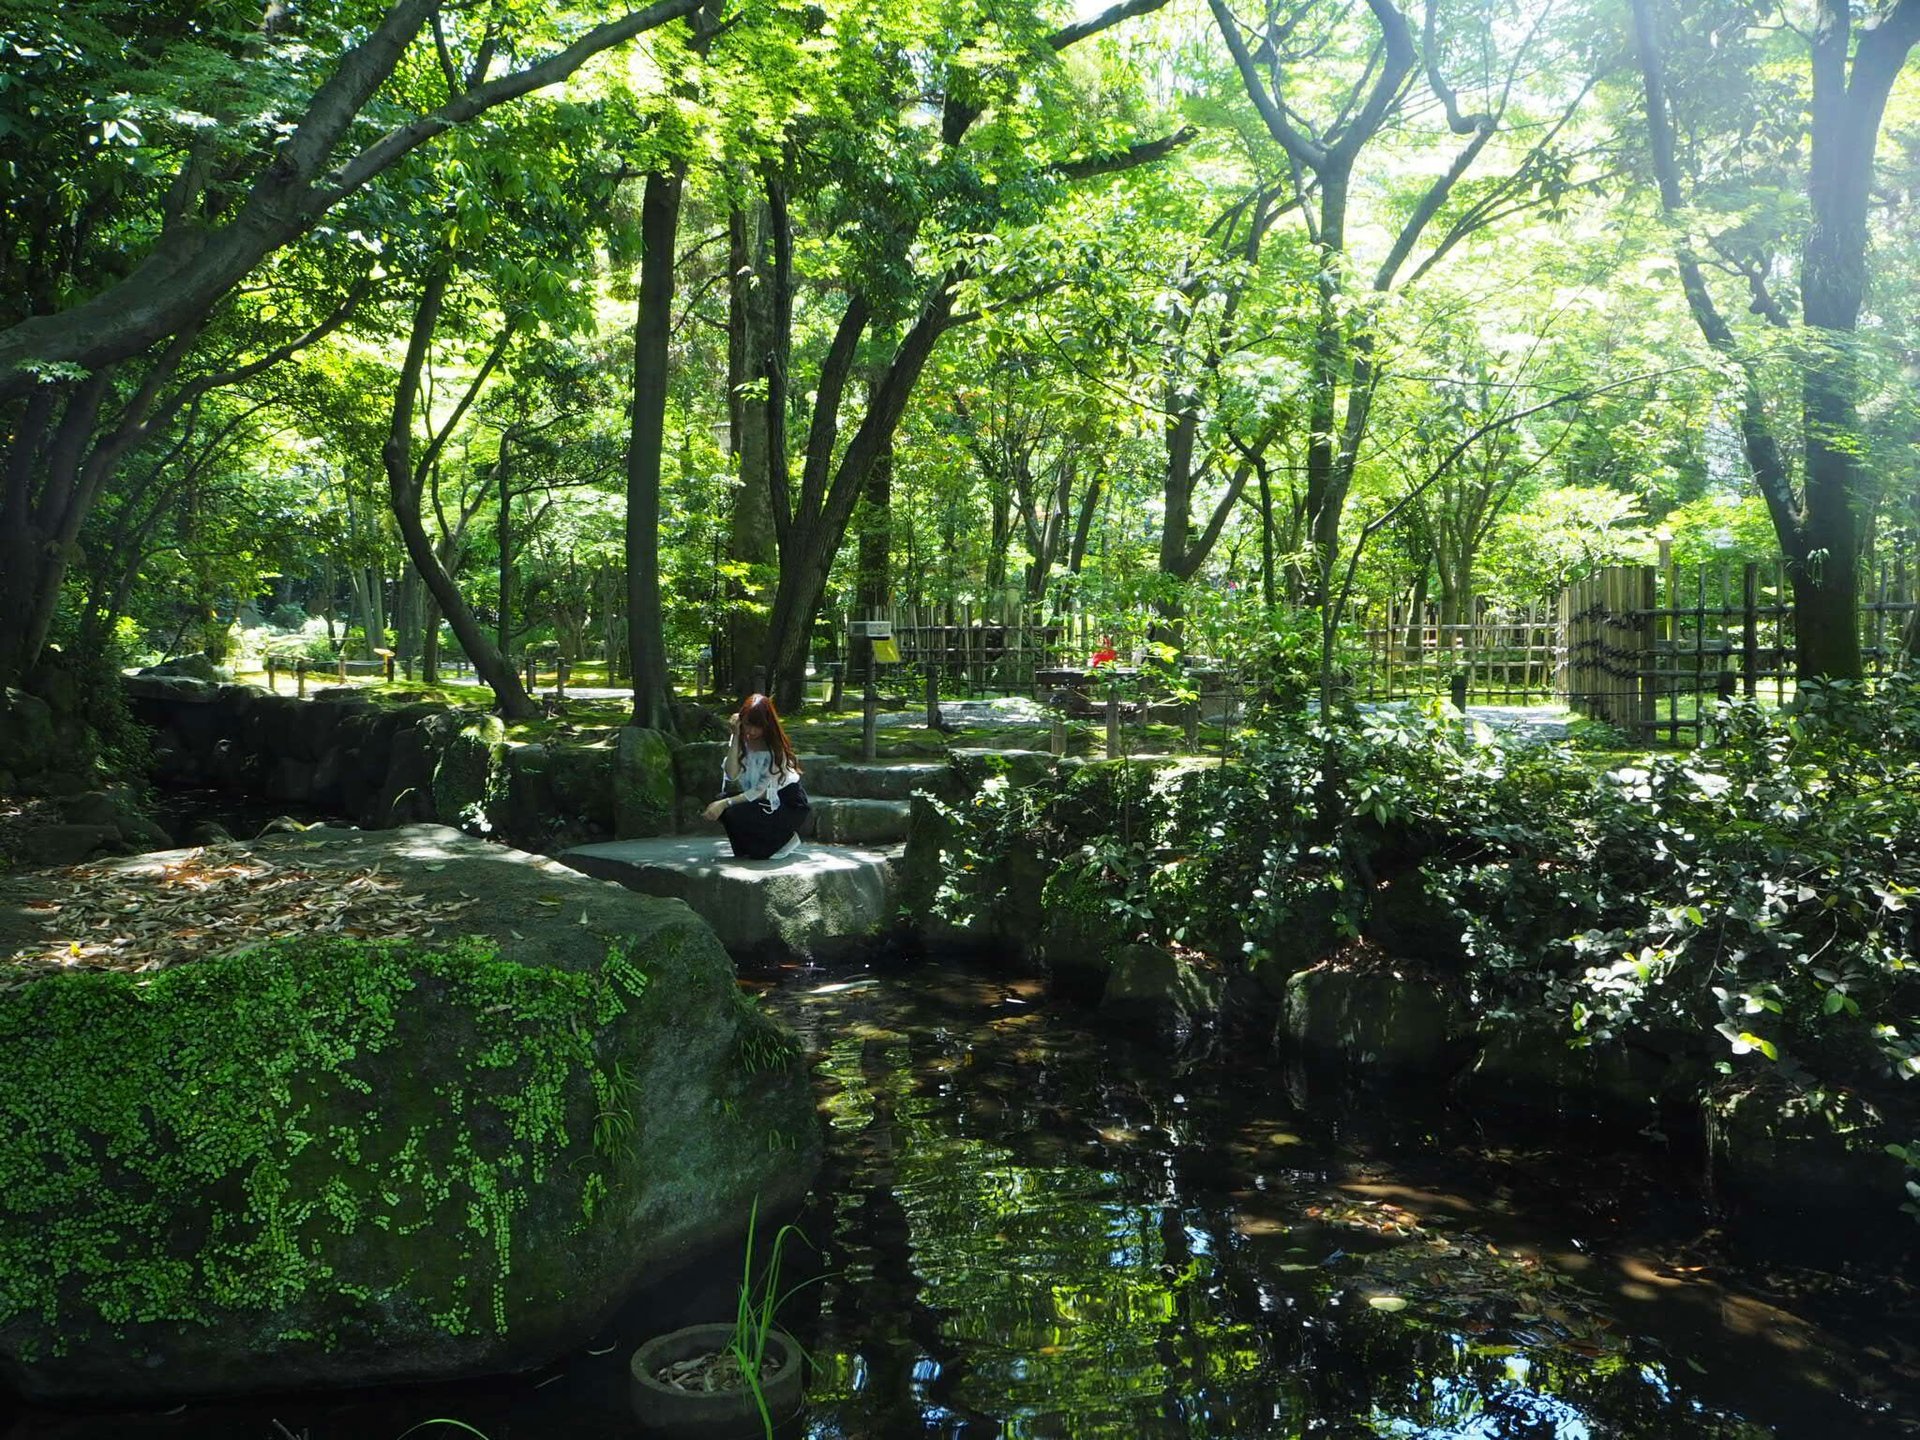 しっとり庭園で森林浴を。六本松からバスで10分の場所にある「友泉亭公園」でリフレッシュを。